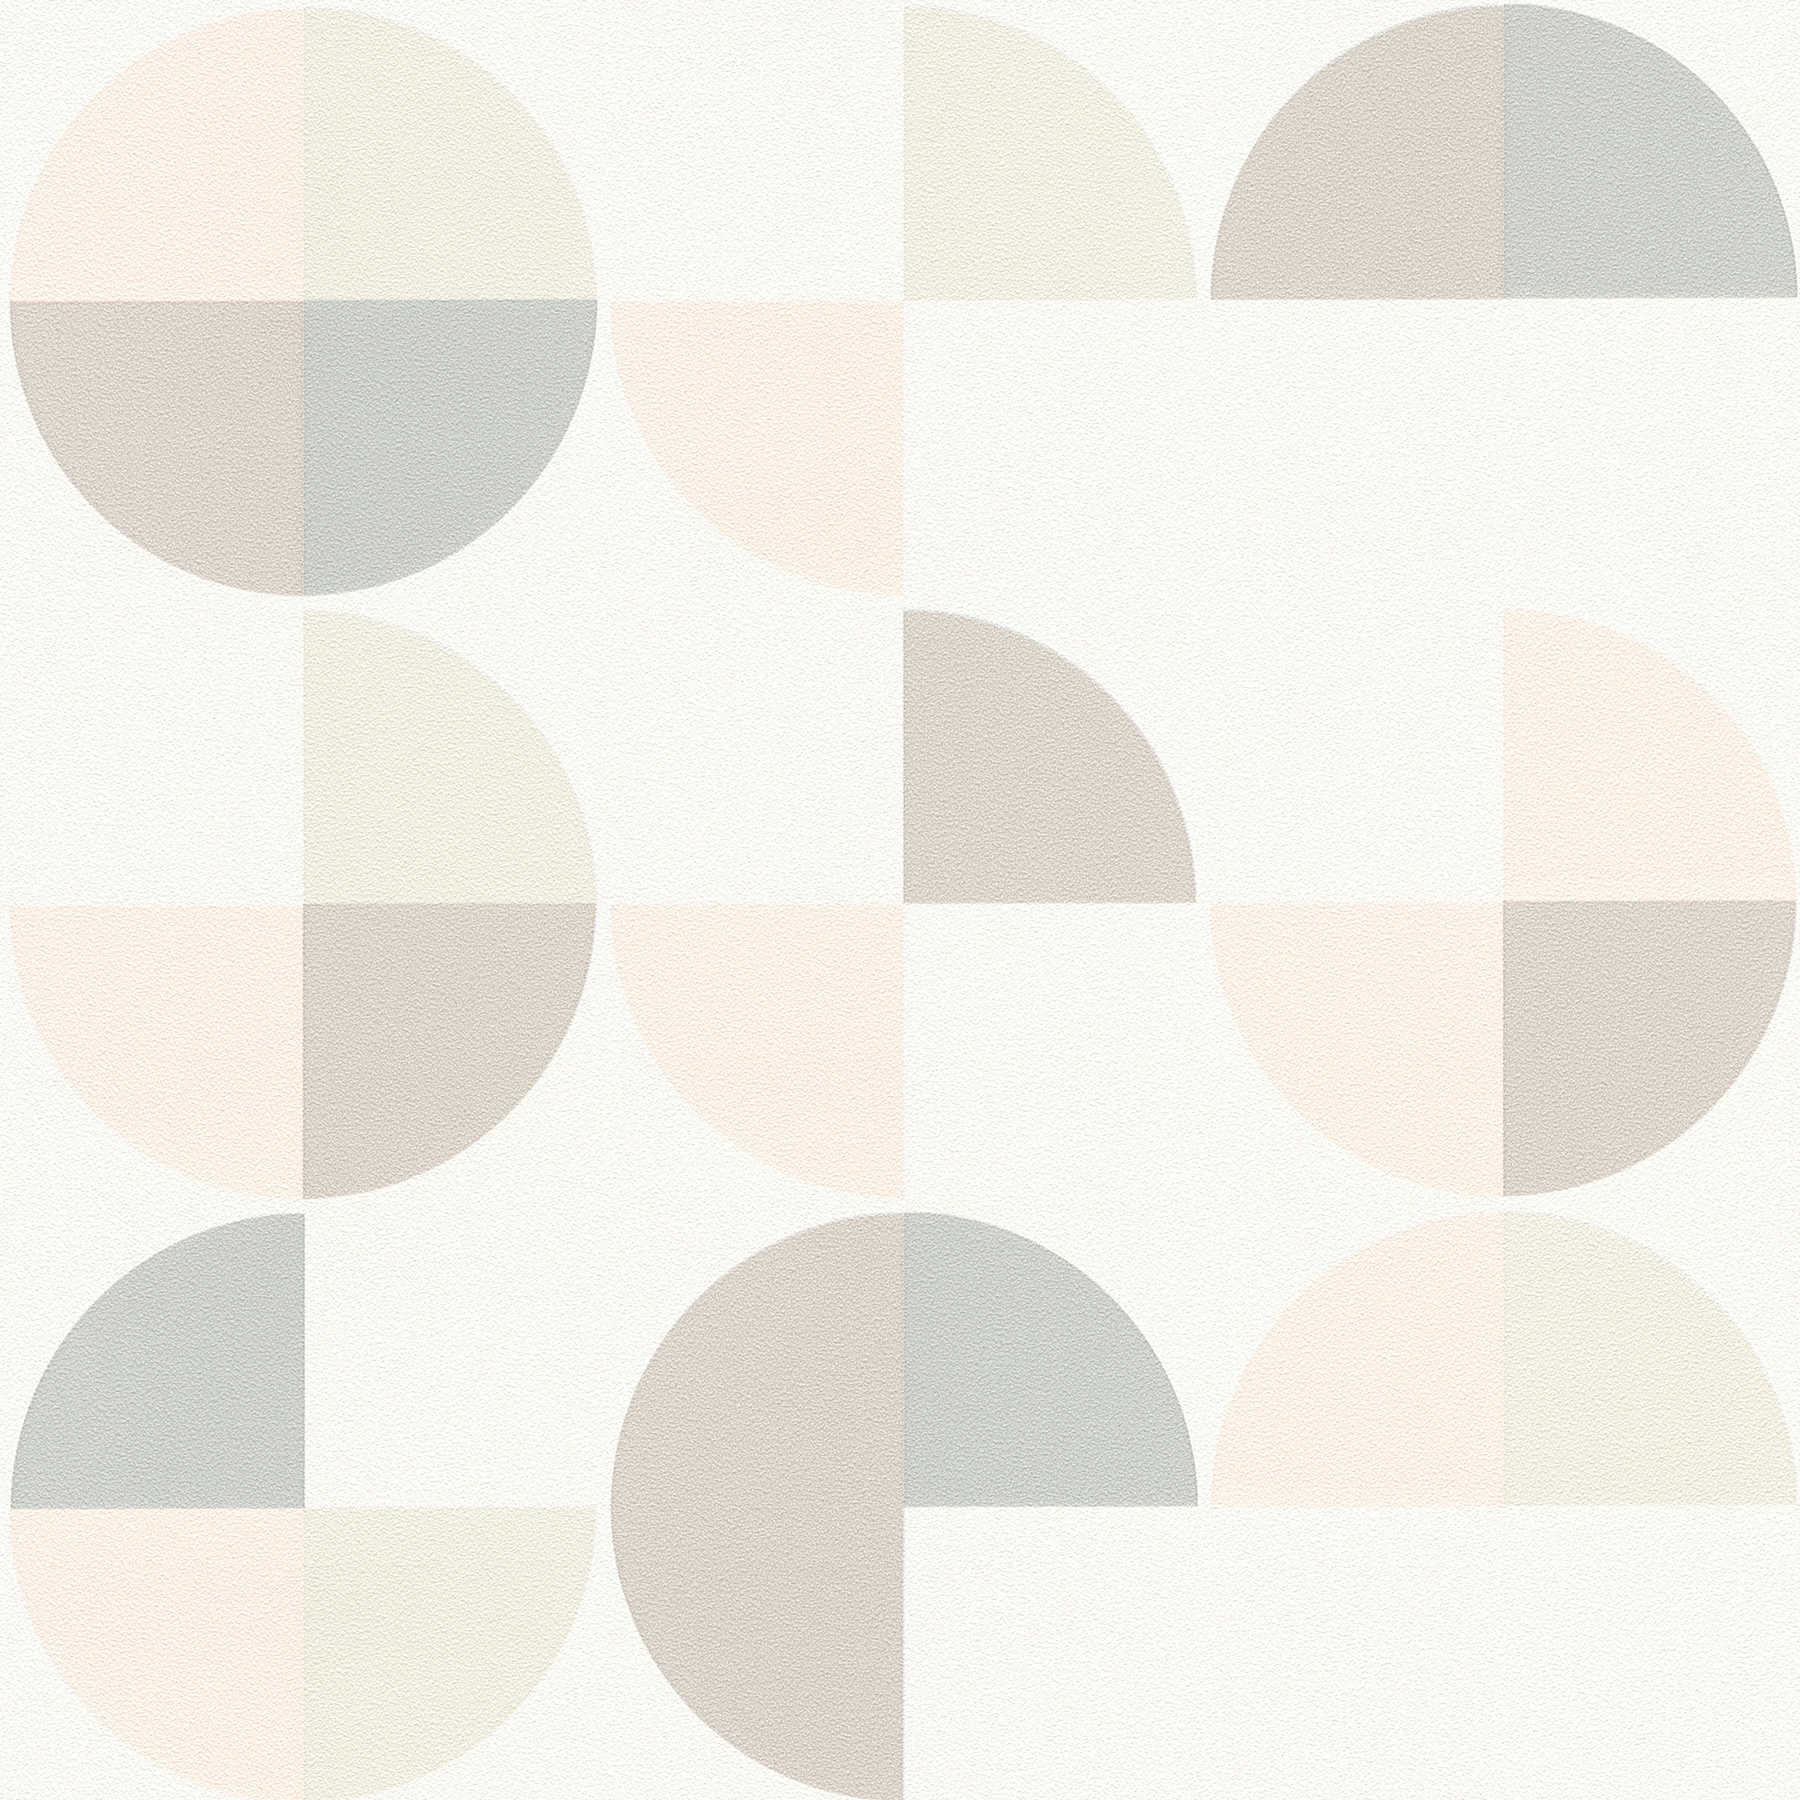 Papier peint à motifs géométriques style scandinave - gris, rose, beige
